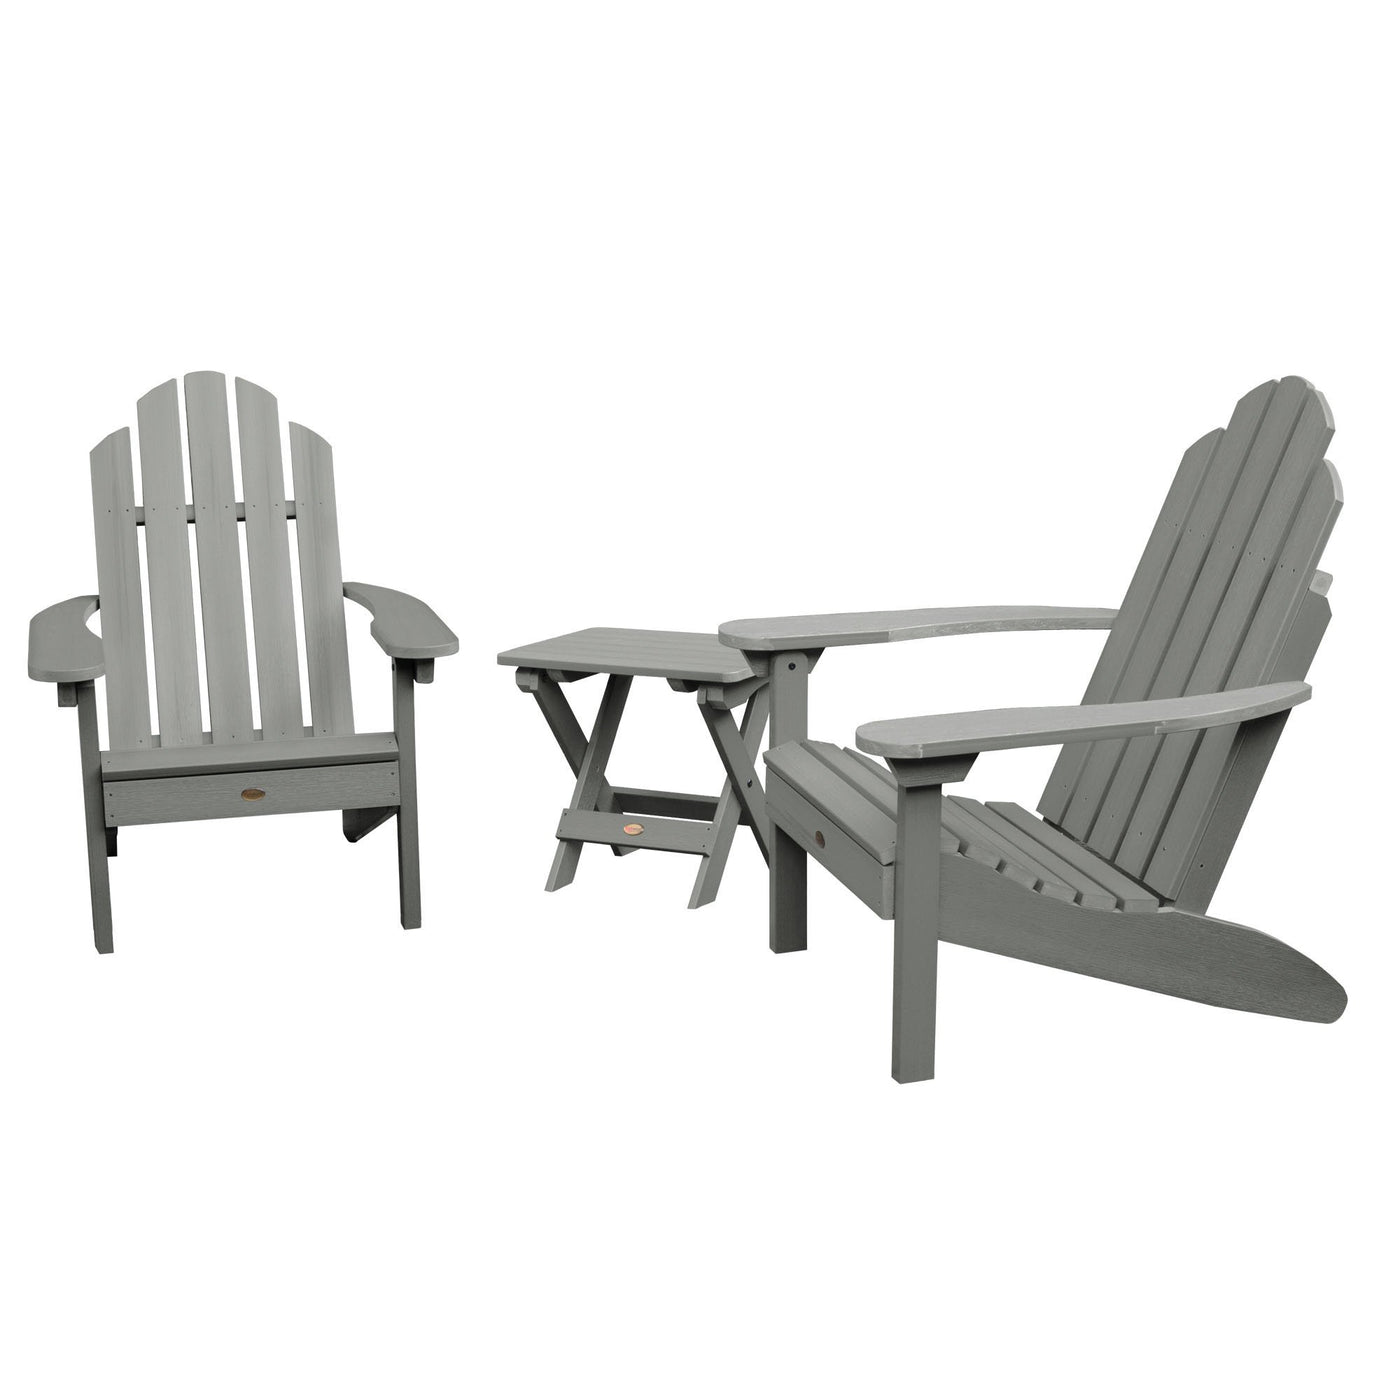 2 Classic Westport Adirondack Chairs with 1 Adirondack Folding Side Table Highwood USA Coastal Teak 